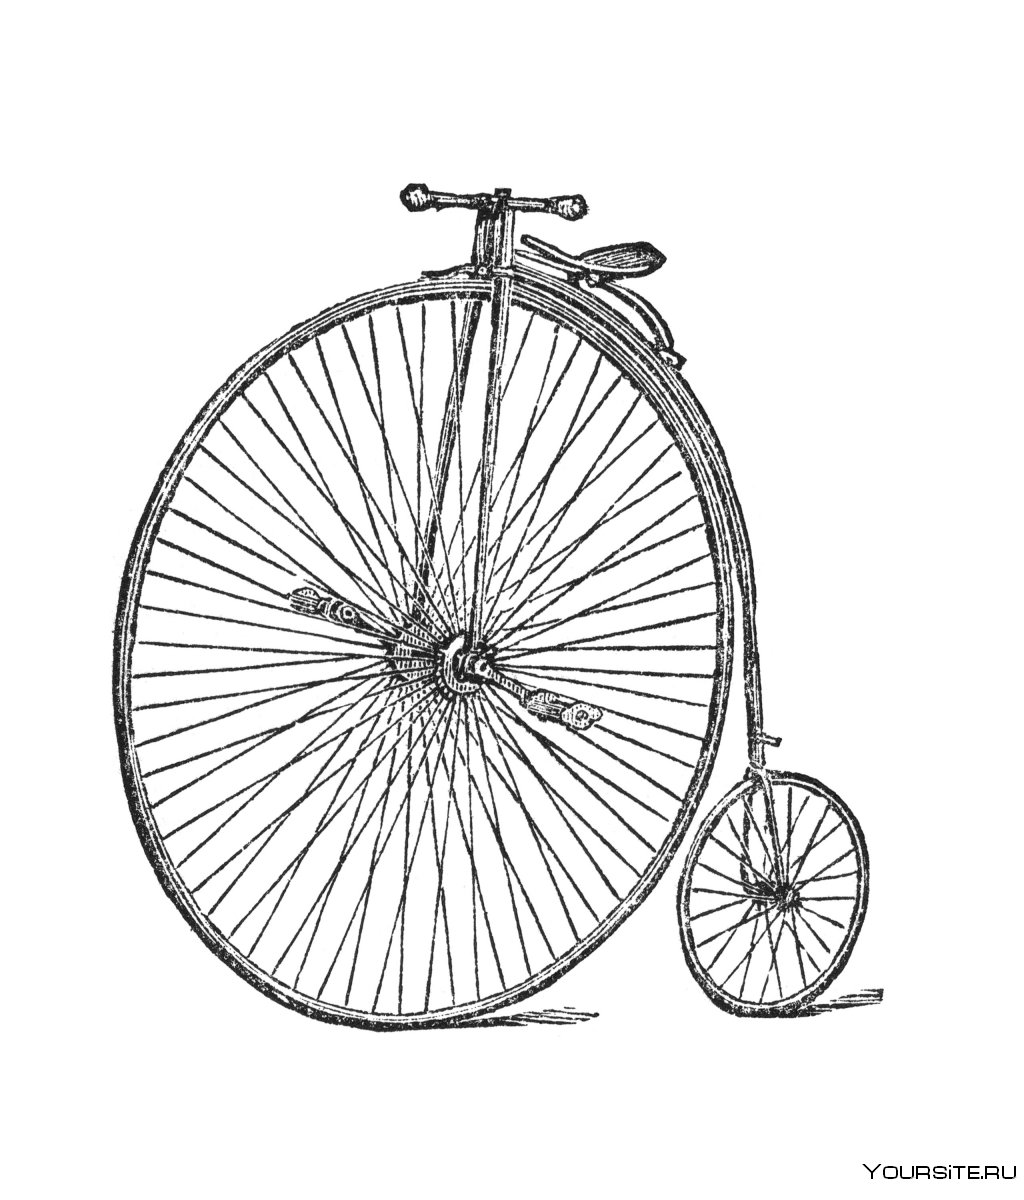 Велосипед с большим колесом спереди 19 века